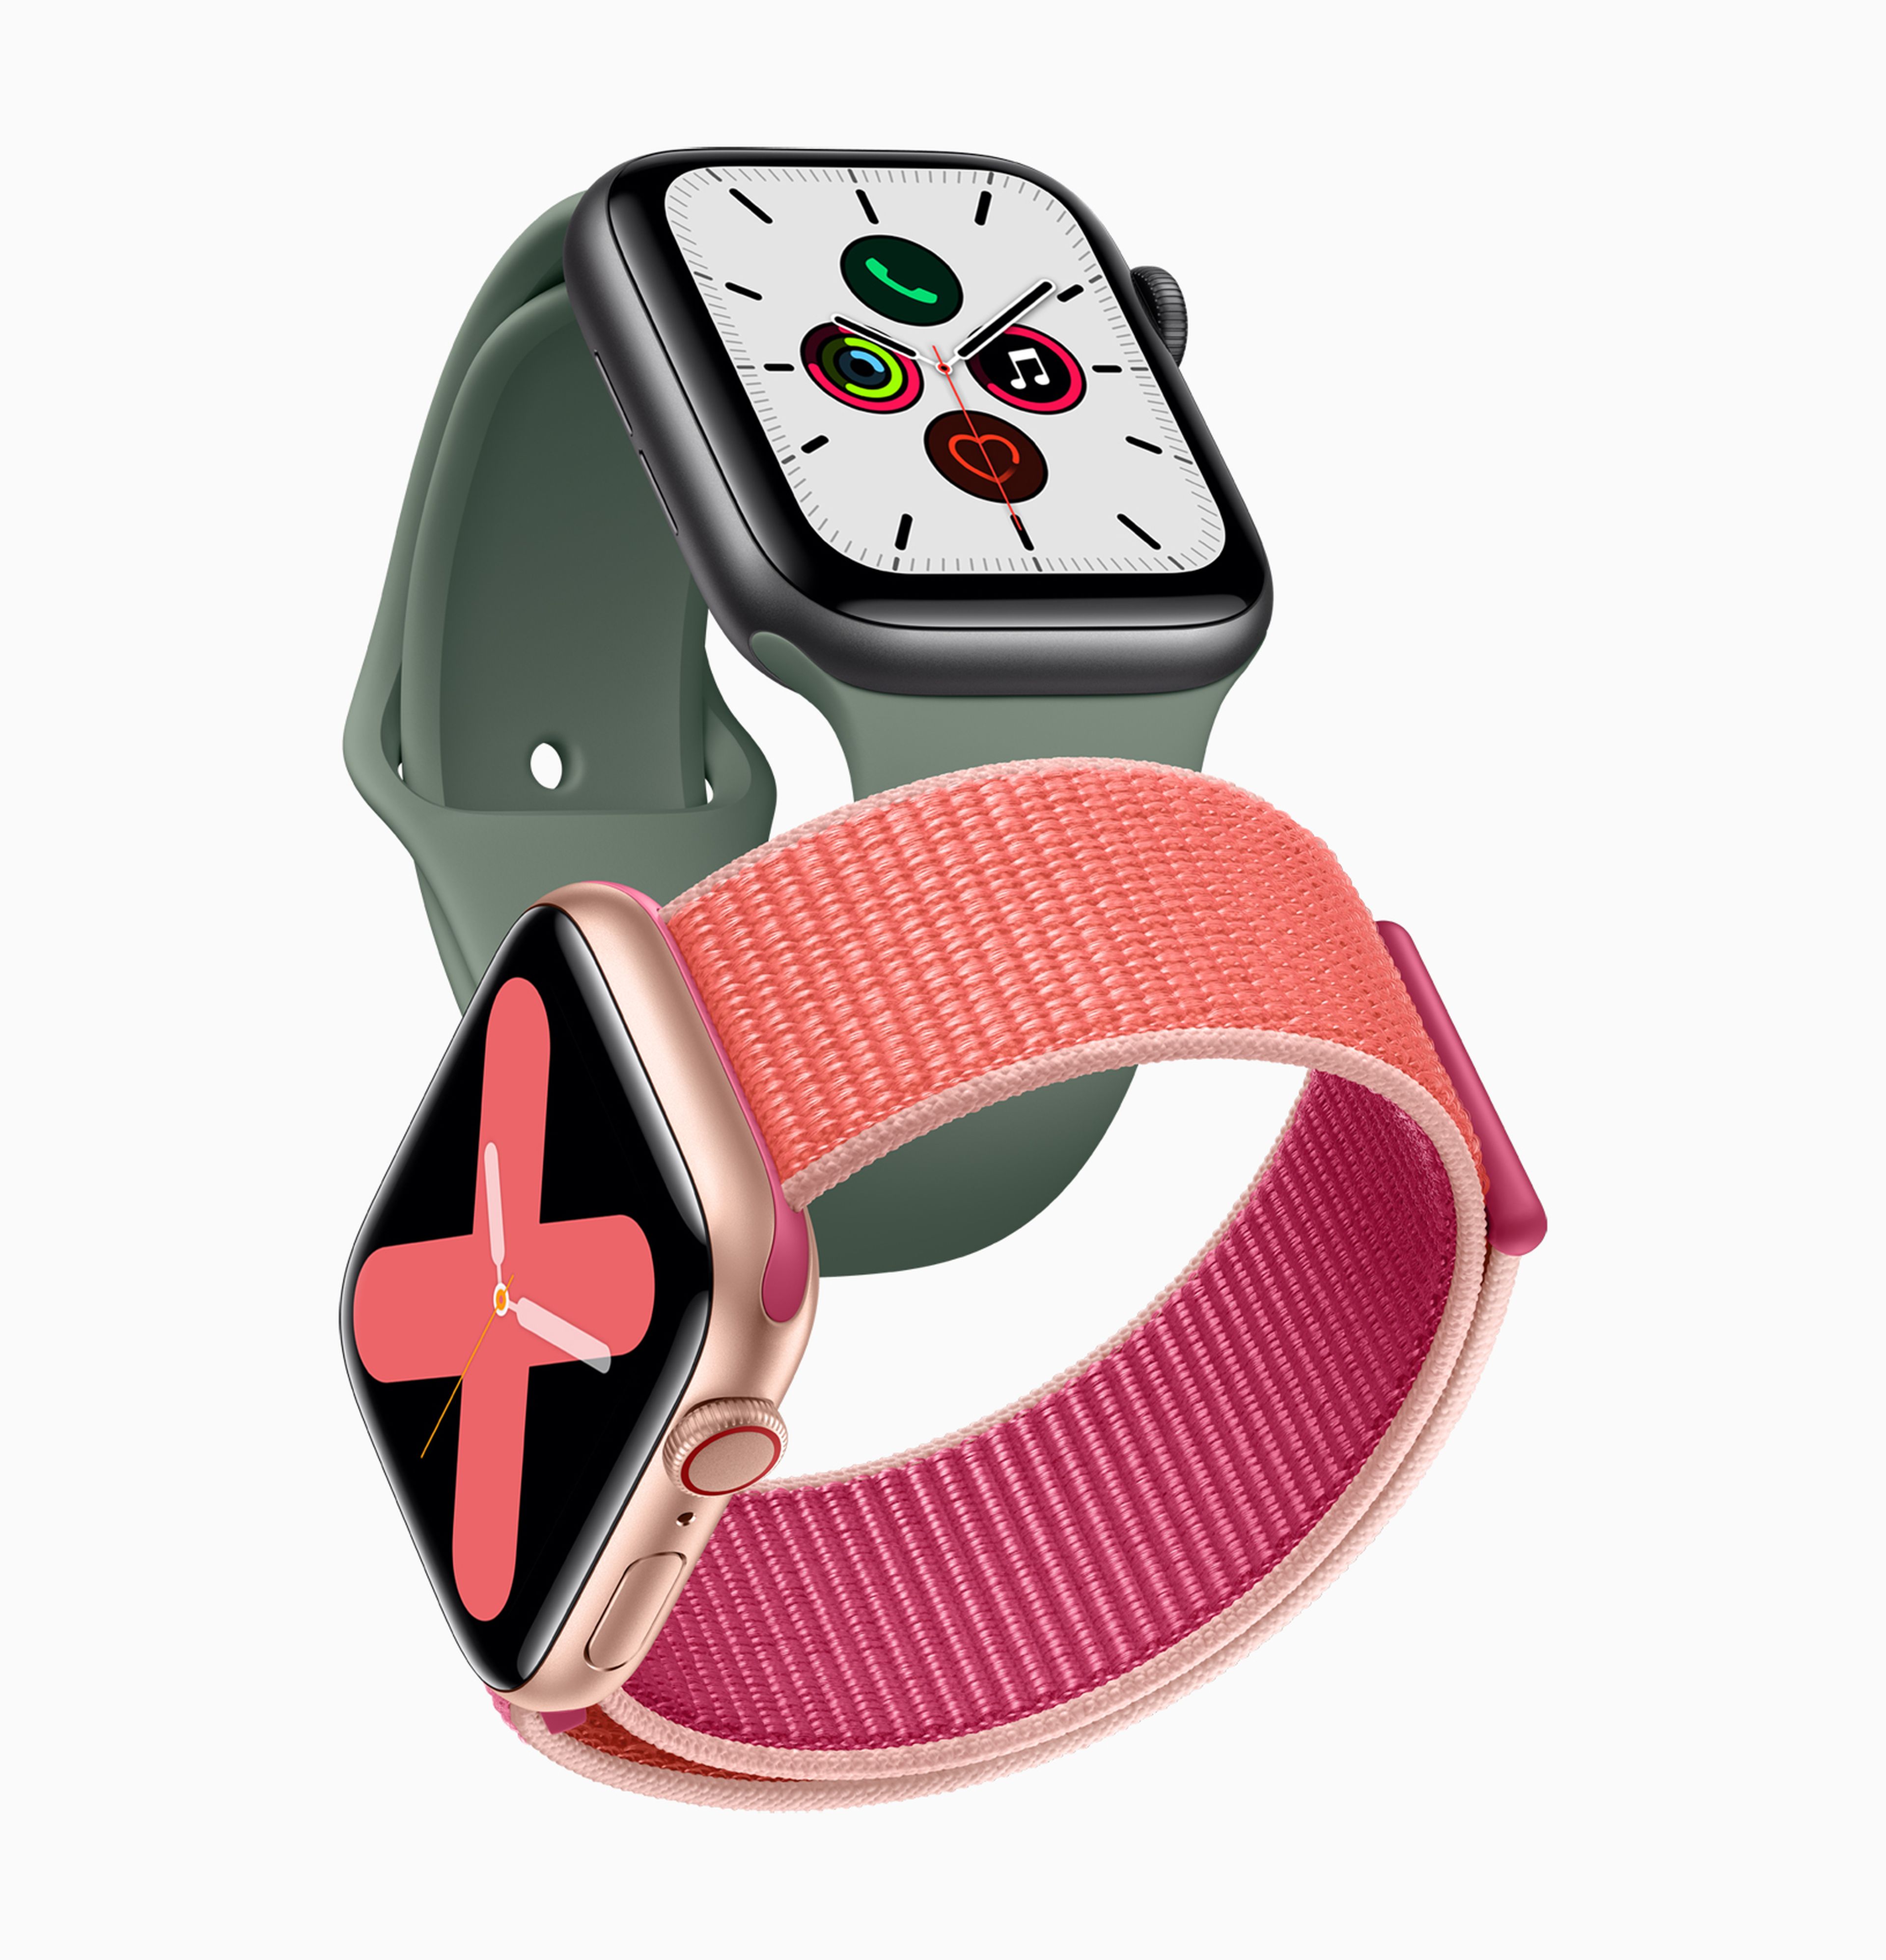 Apple Watch Series 5 modelos